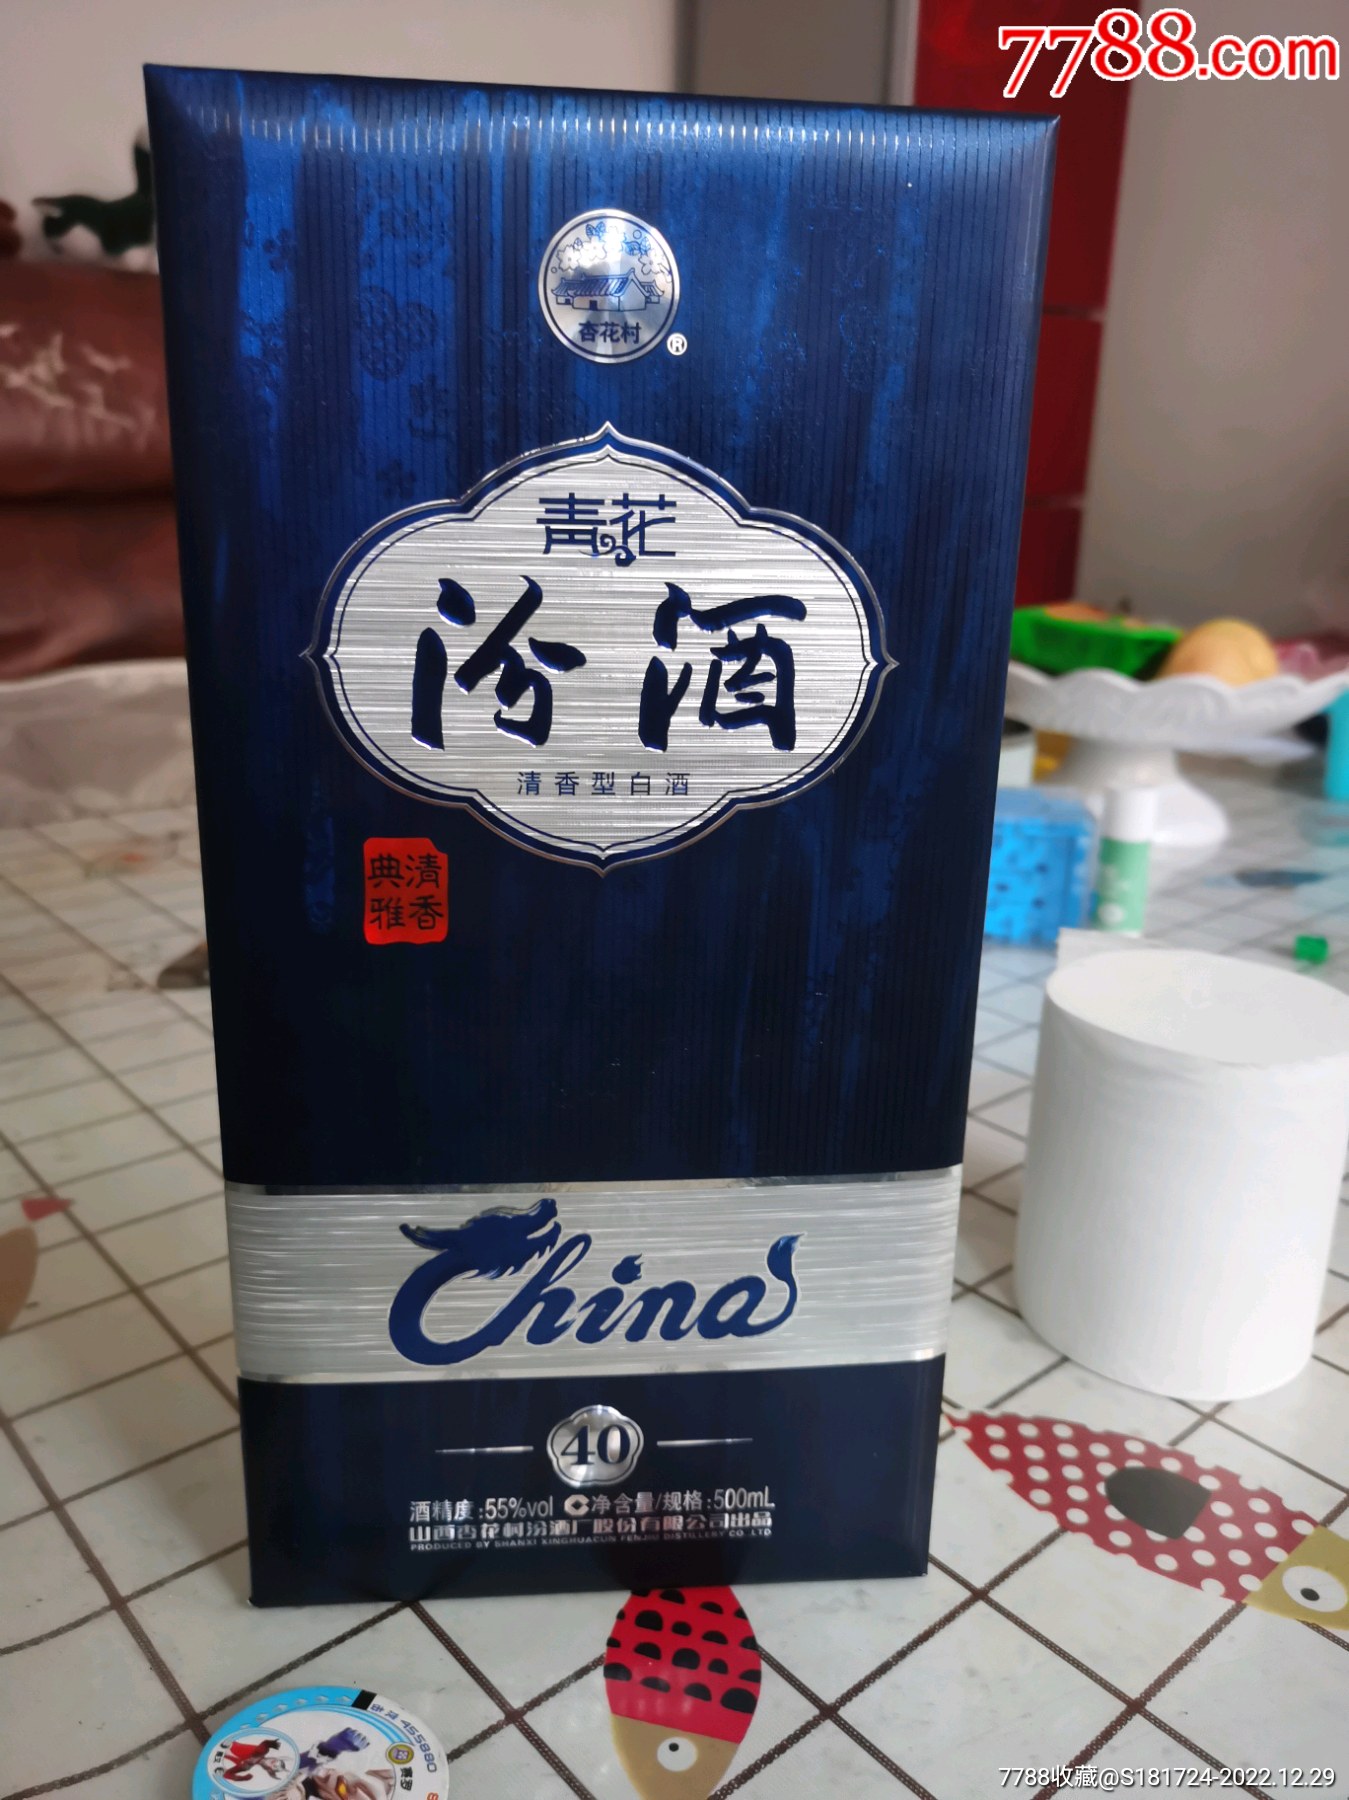 我这里的中国青花汾酒图片